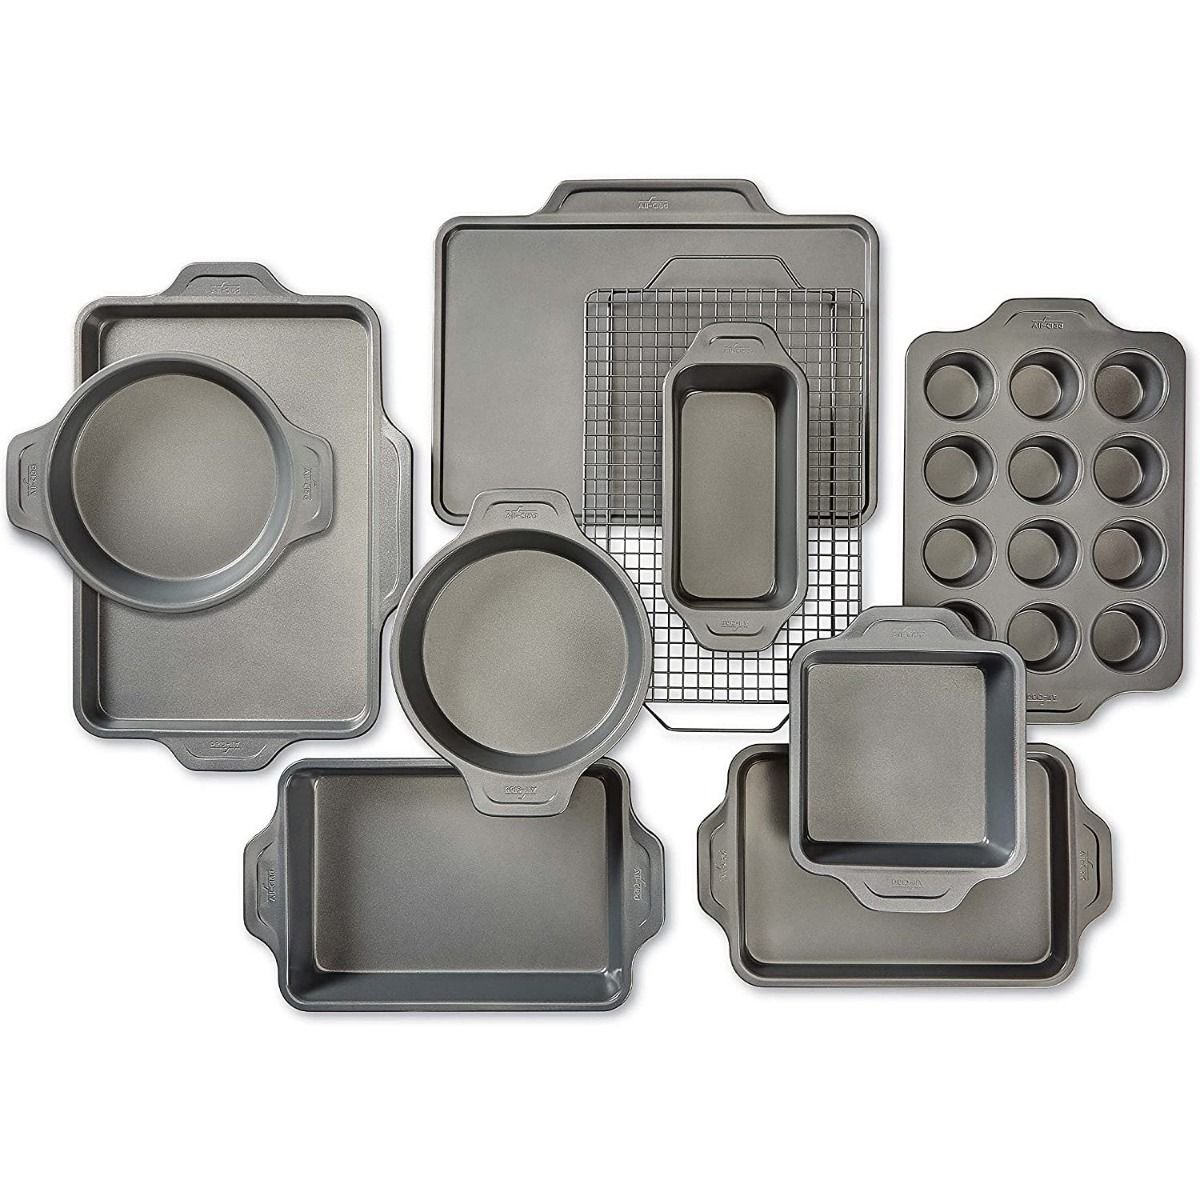  Farberware Nonstick Steel Bakeware Set, 10-Piece Set